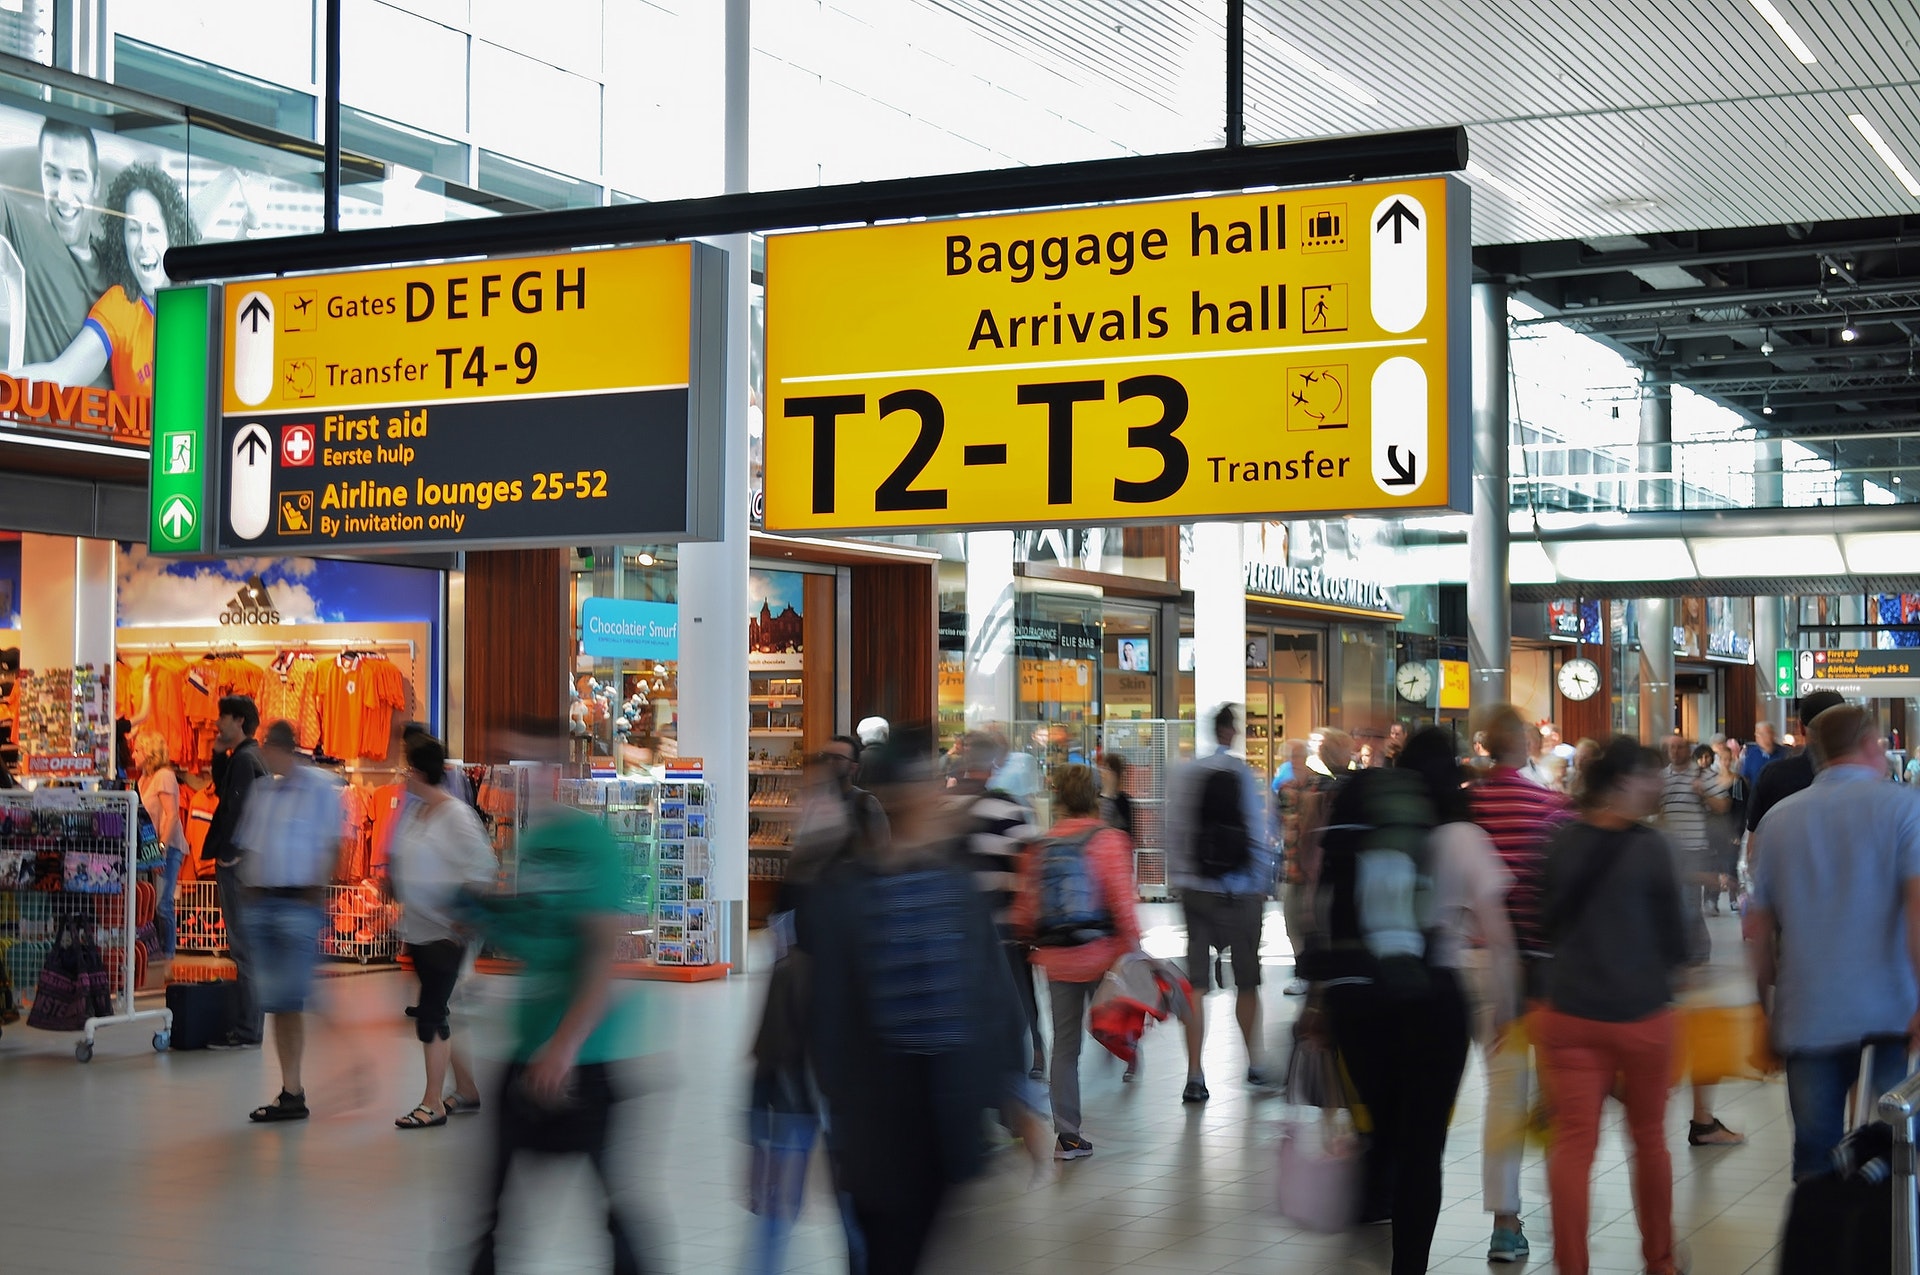 Saguão de um aeroporto com várias pessoas. Imagem ilustrativa do texto microfranquia digital.